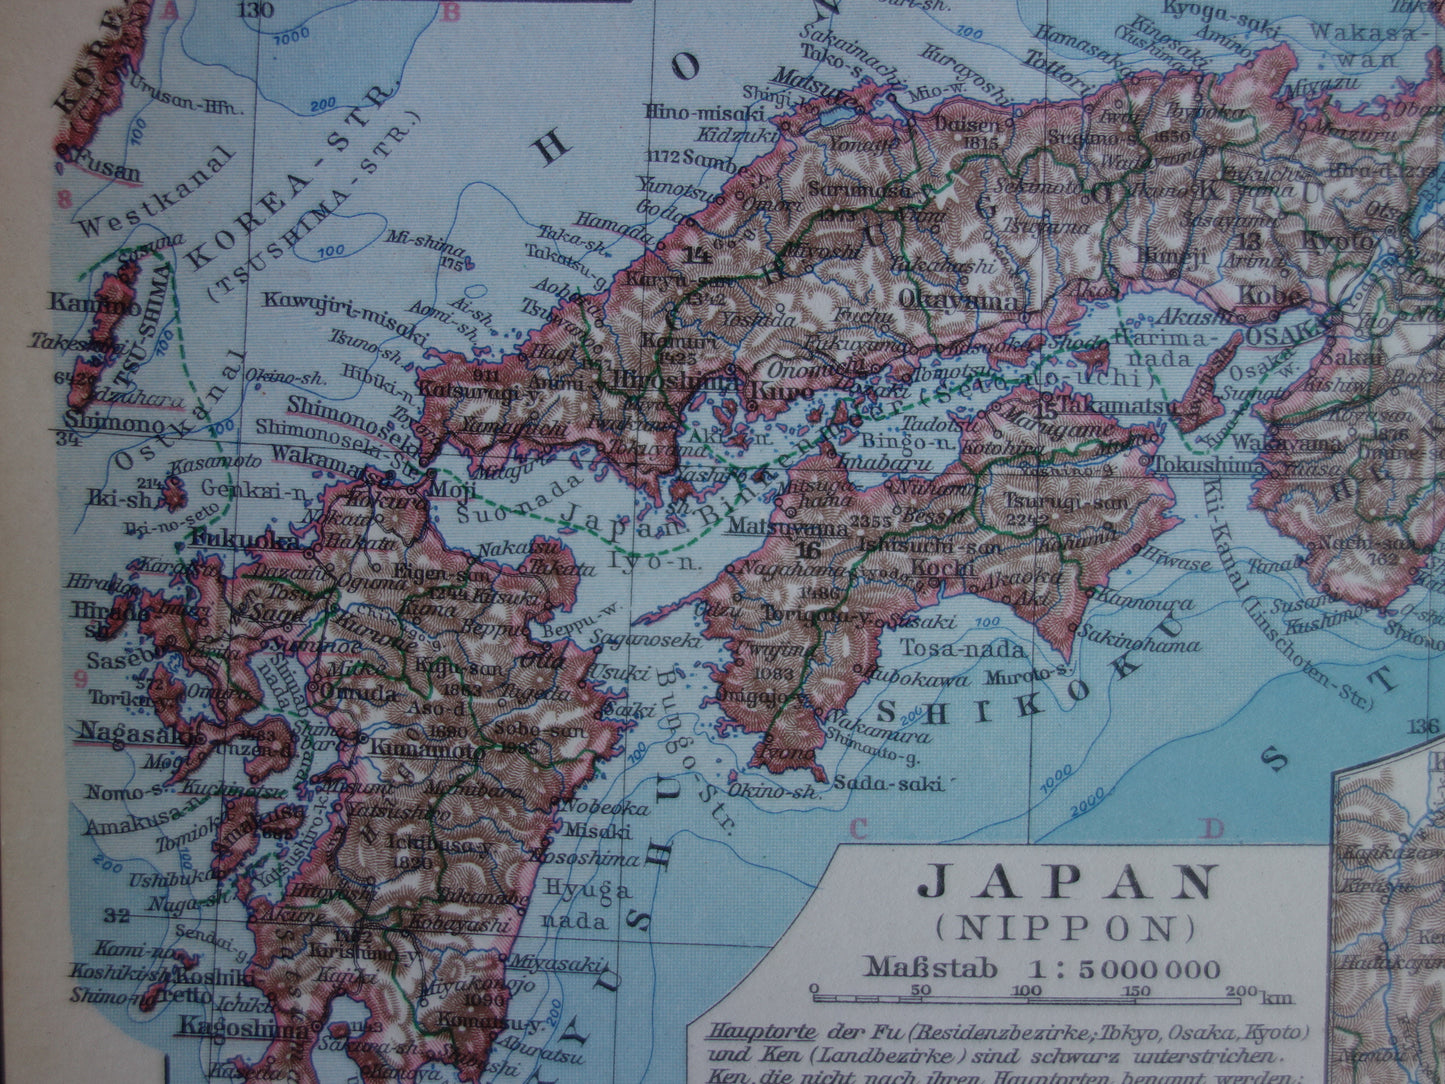 JAPAN oude gedetailleerde kaart van Japan uit 1928 originele vintage landkaart Tokio Koerilen Hokkaido